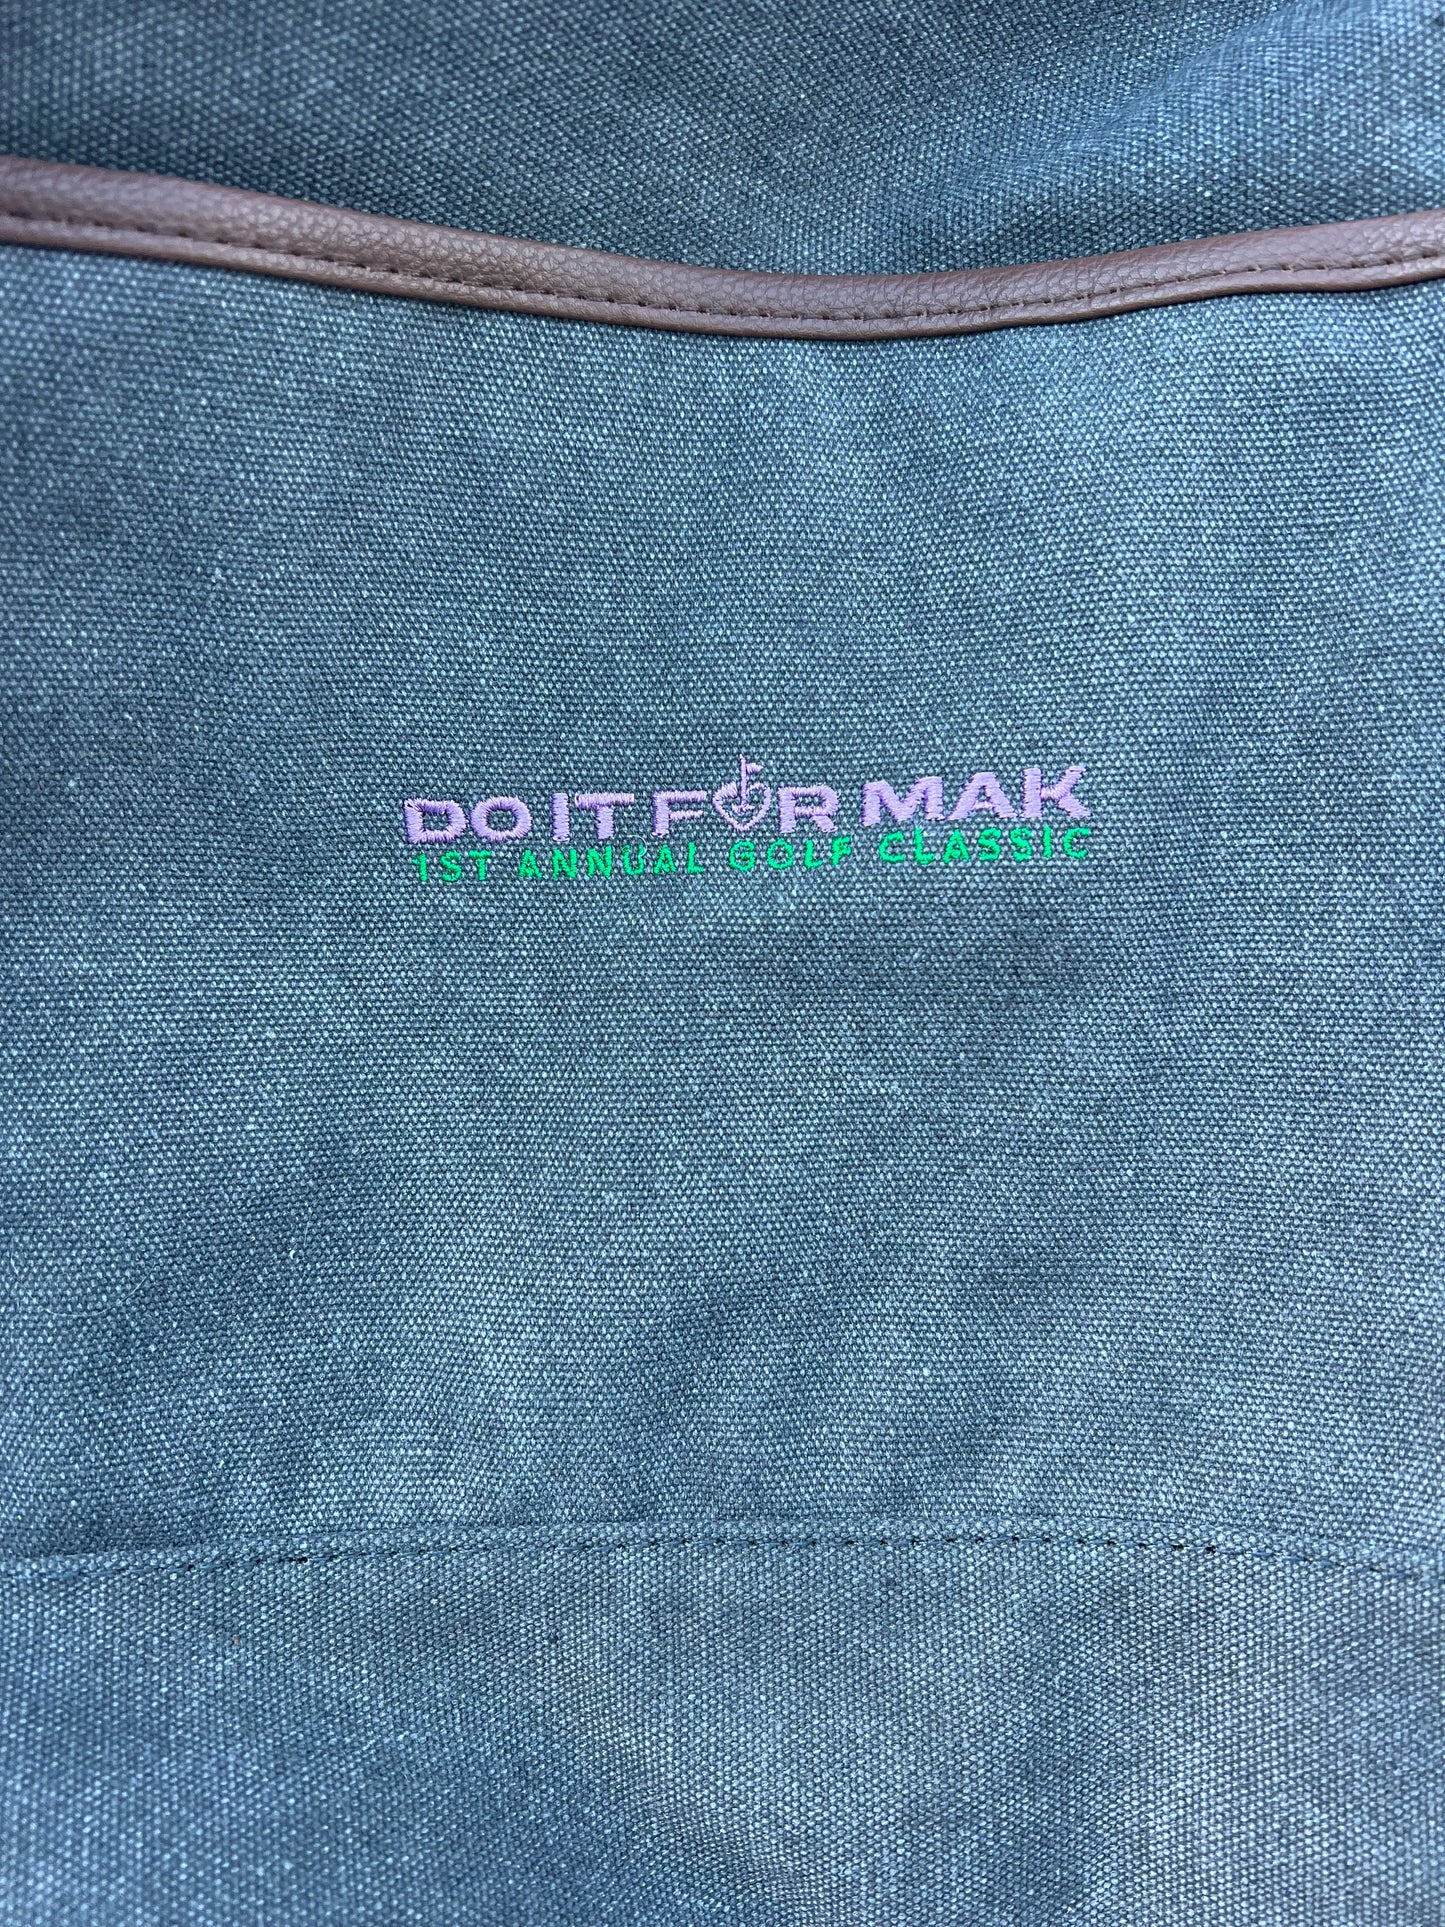 Do It For Mak Golf  Travel Bag